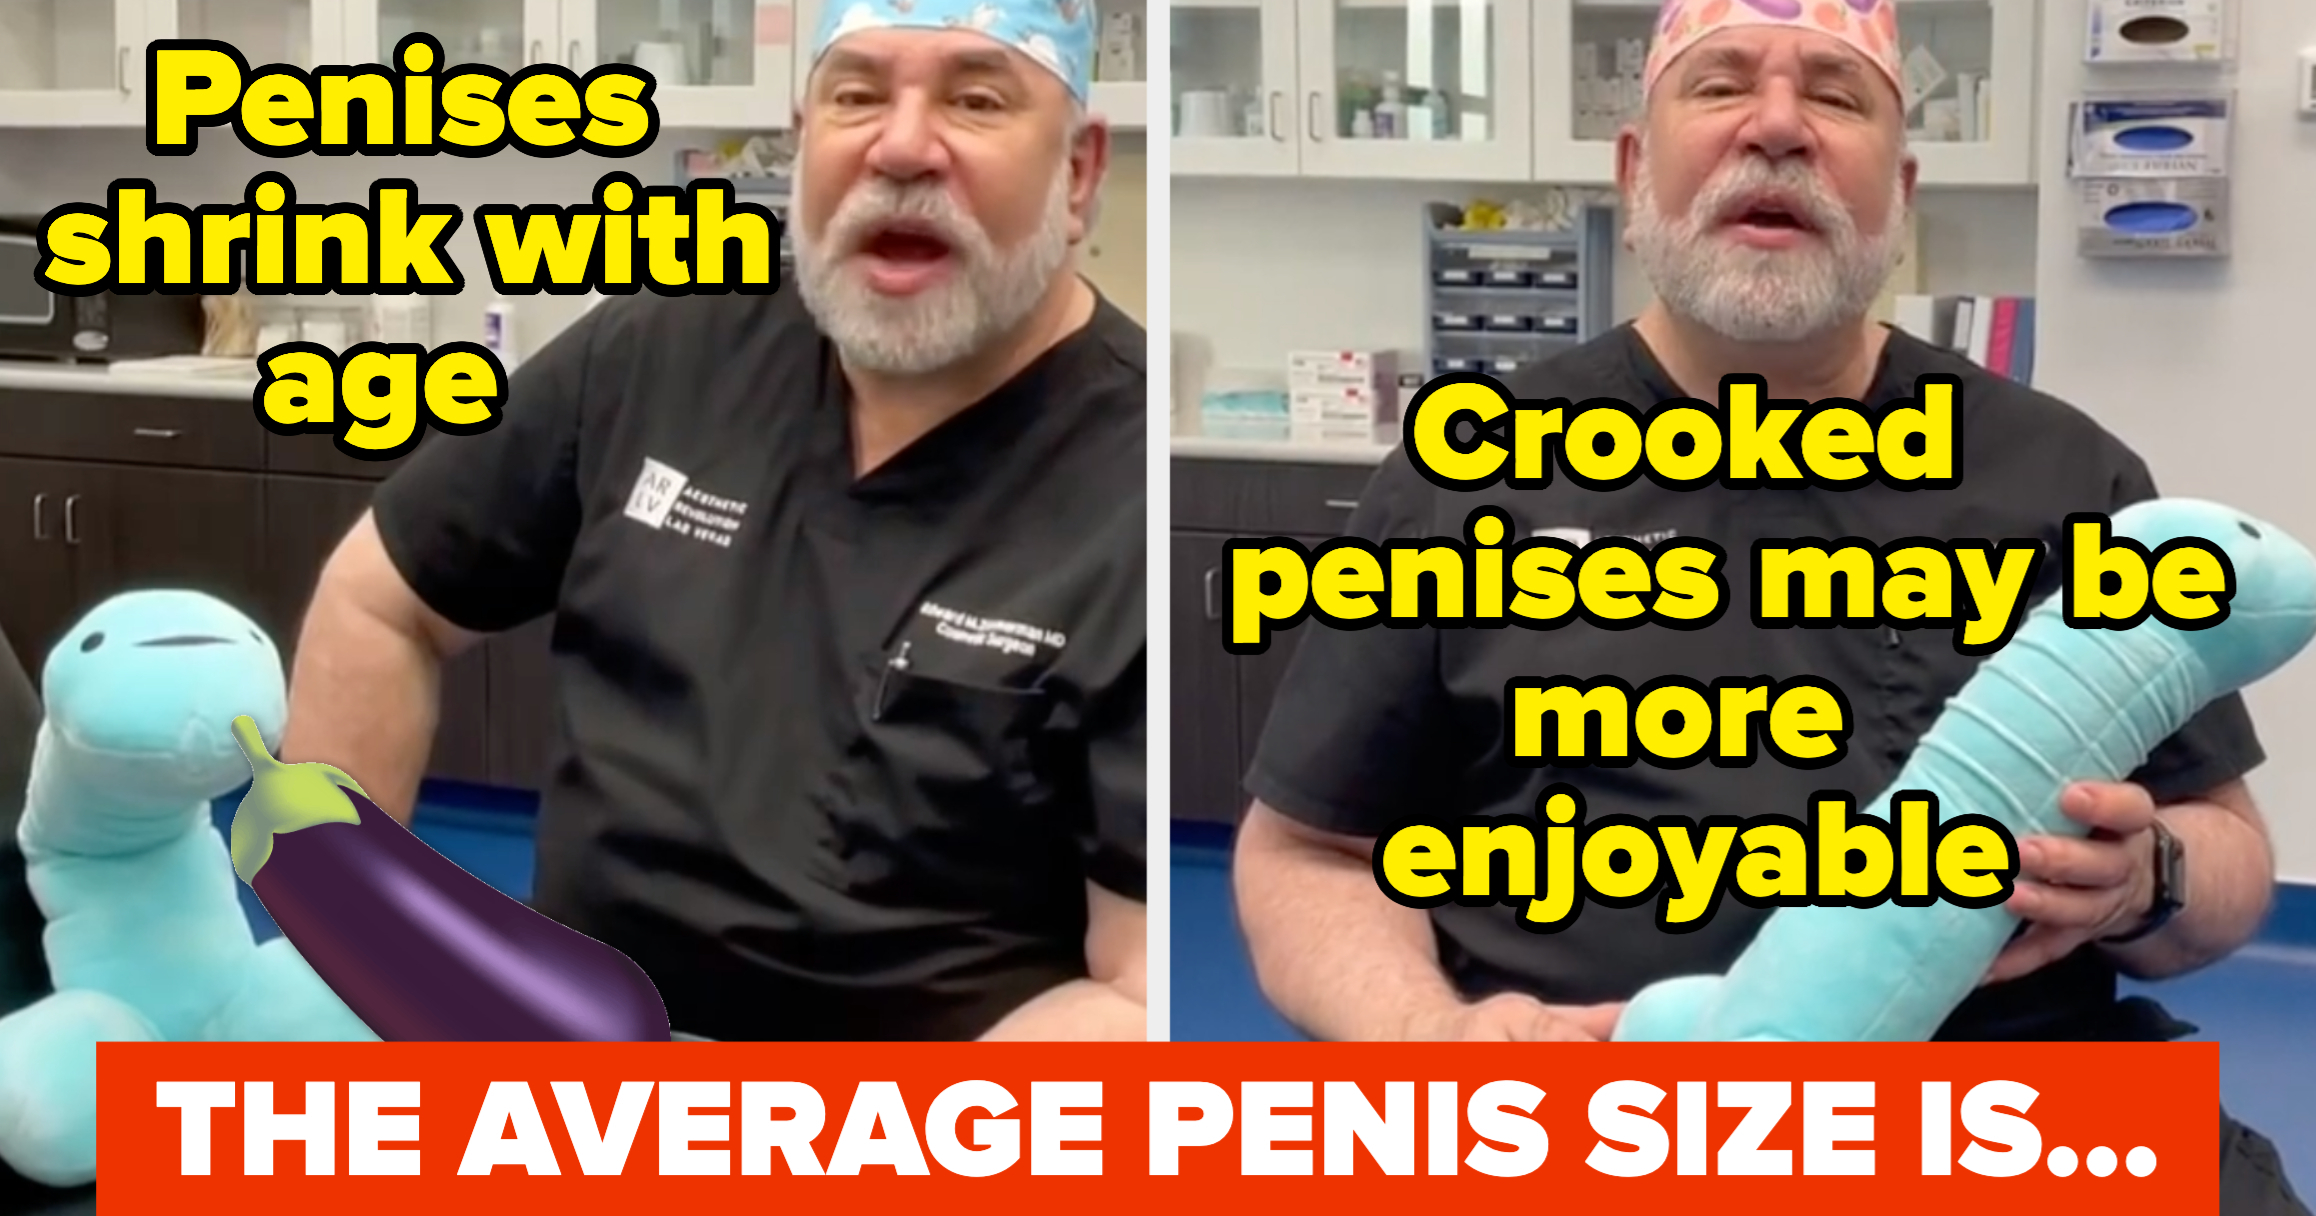 Ways to enhance penis size